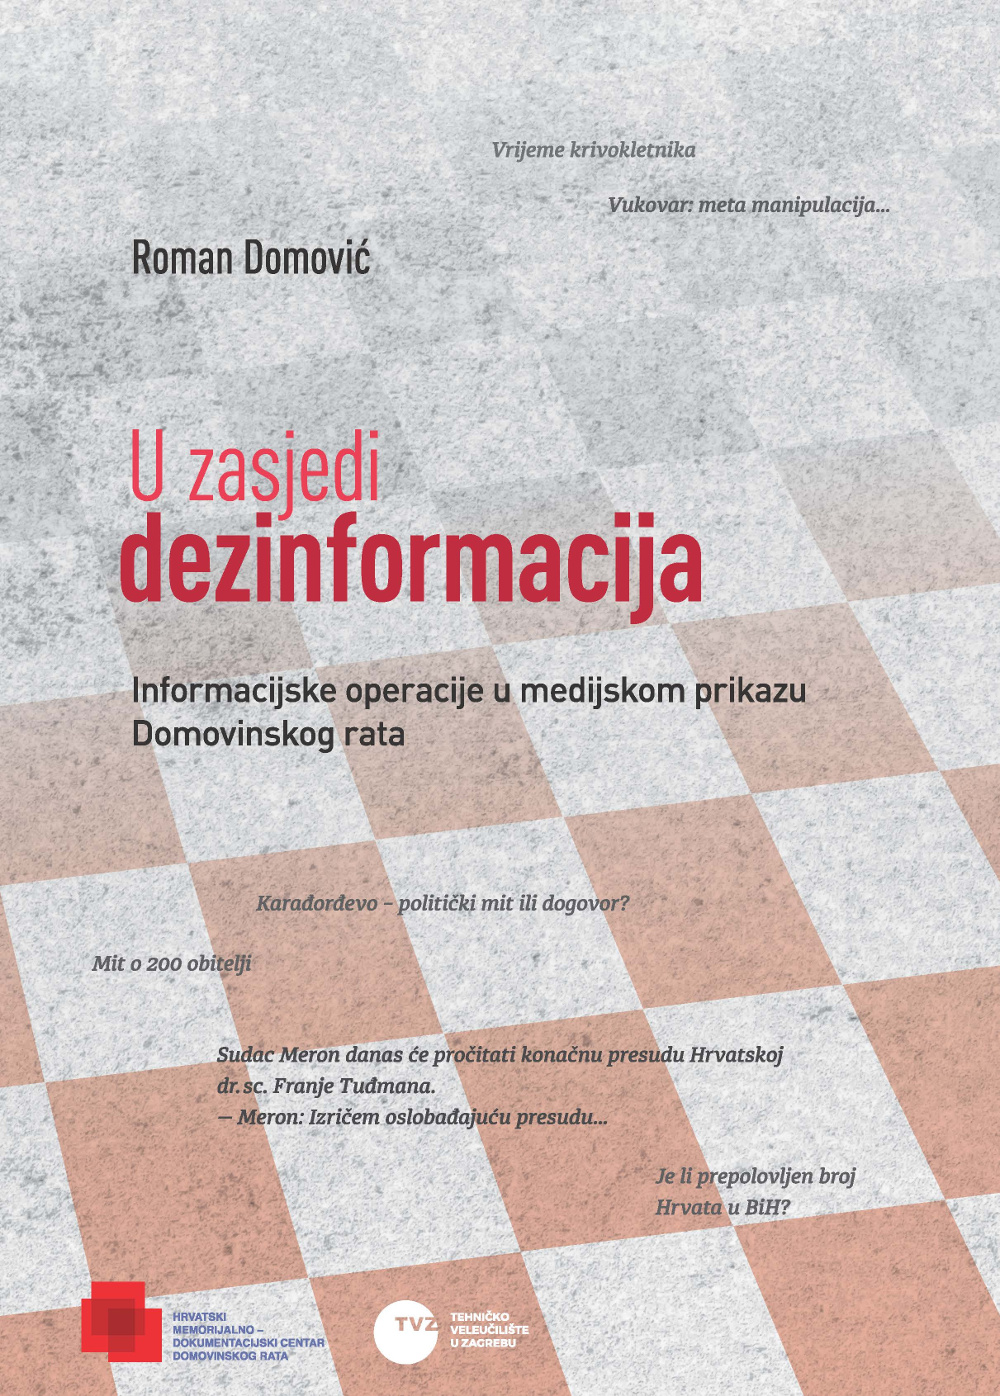 Roman Domović "U zasjedi dezinformacija"